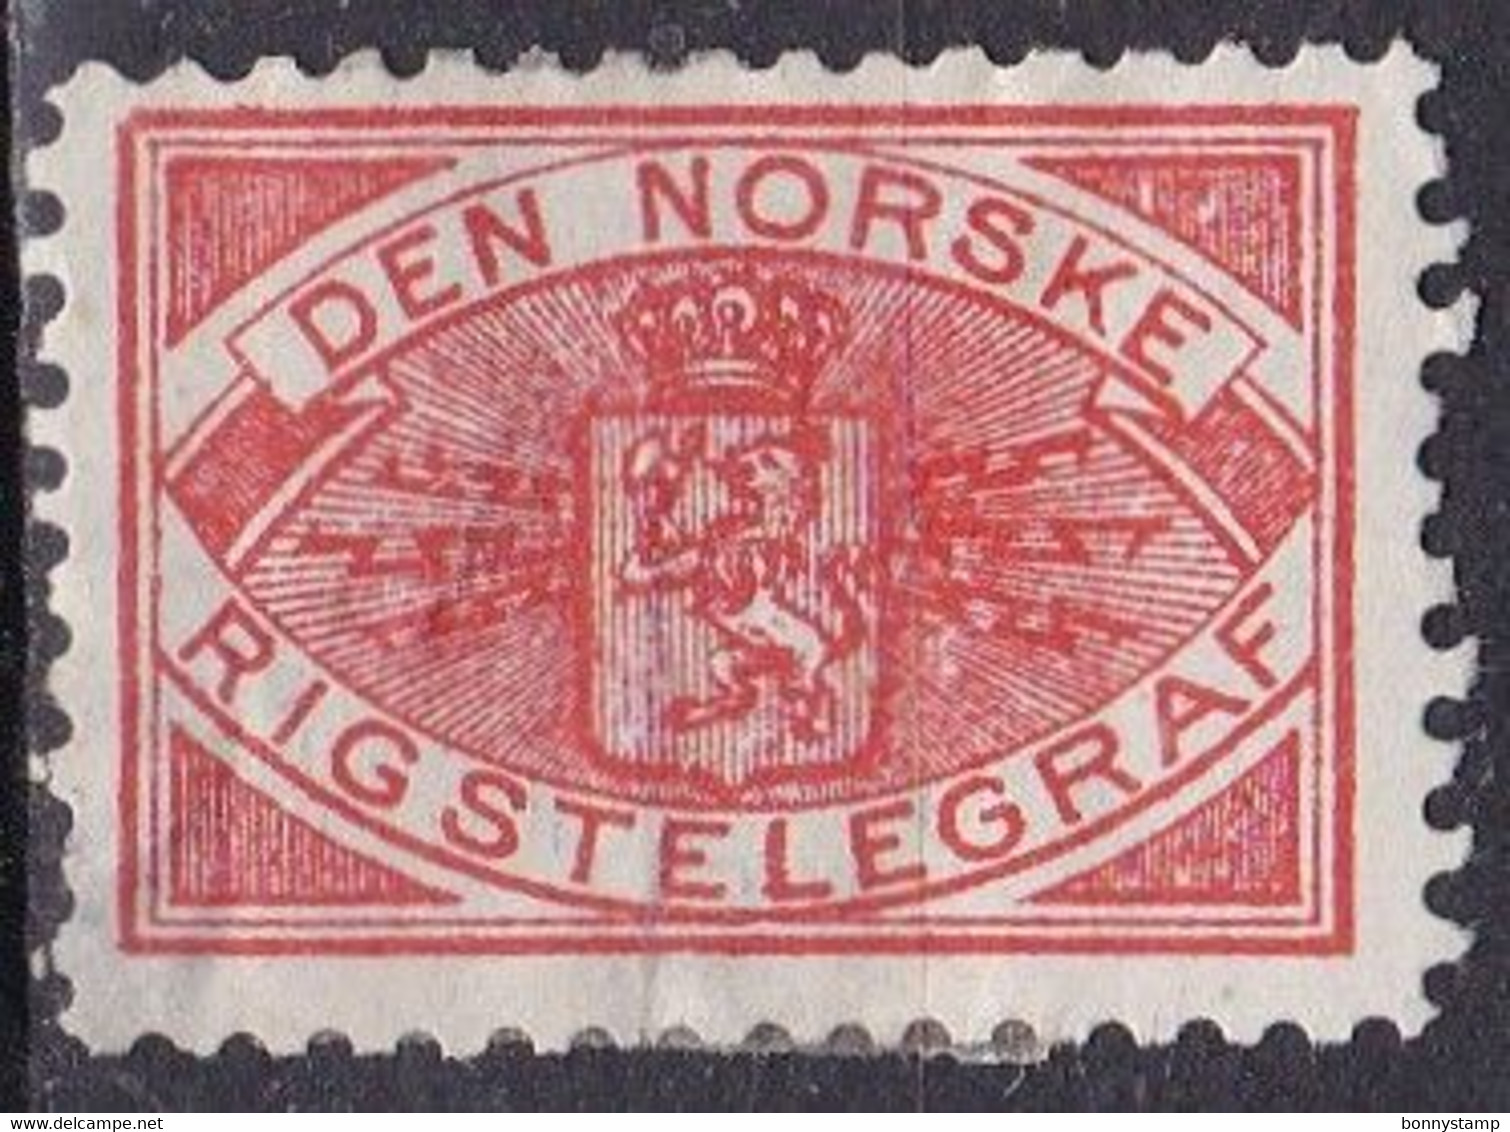 Norvegia, Den Norske Rikstelegraf - Usato° - Revenue Stamps